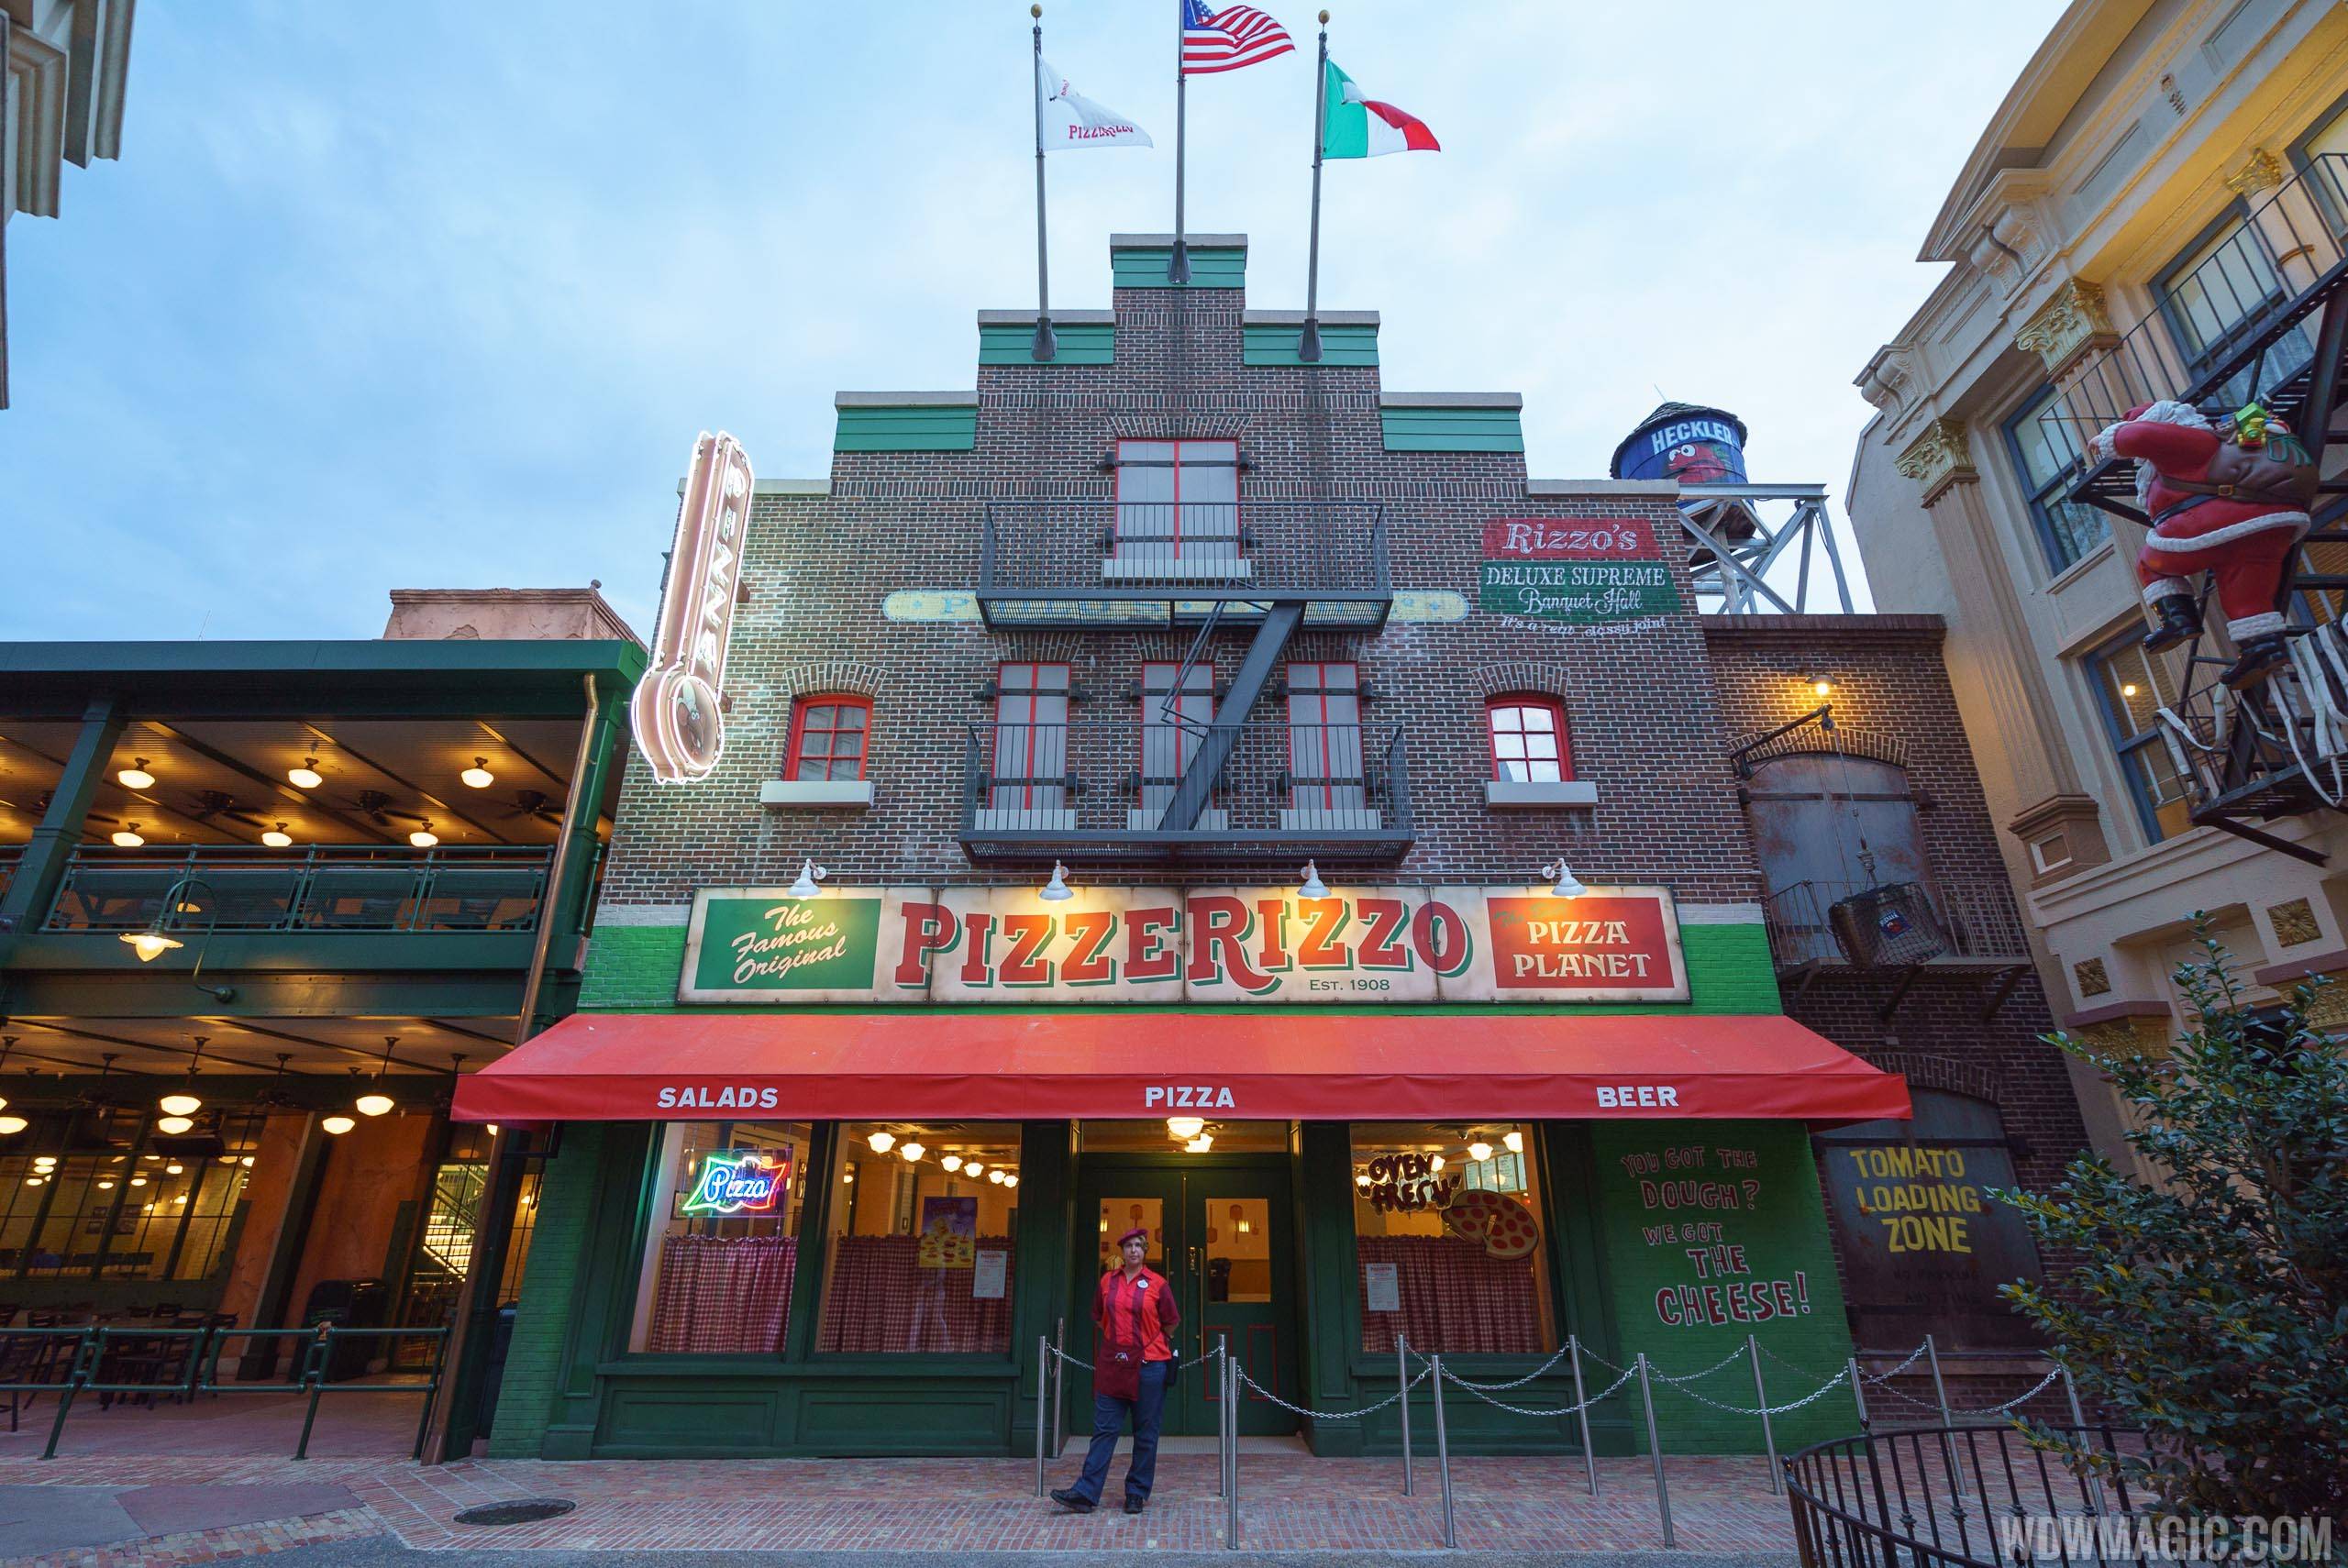 PizzeRizzo returns to operating status during ABC Commissary refurbishment